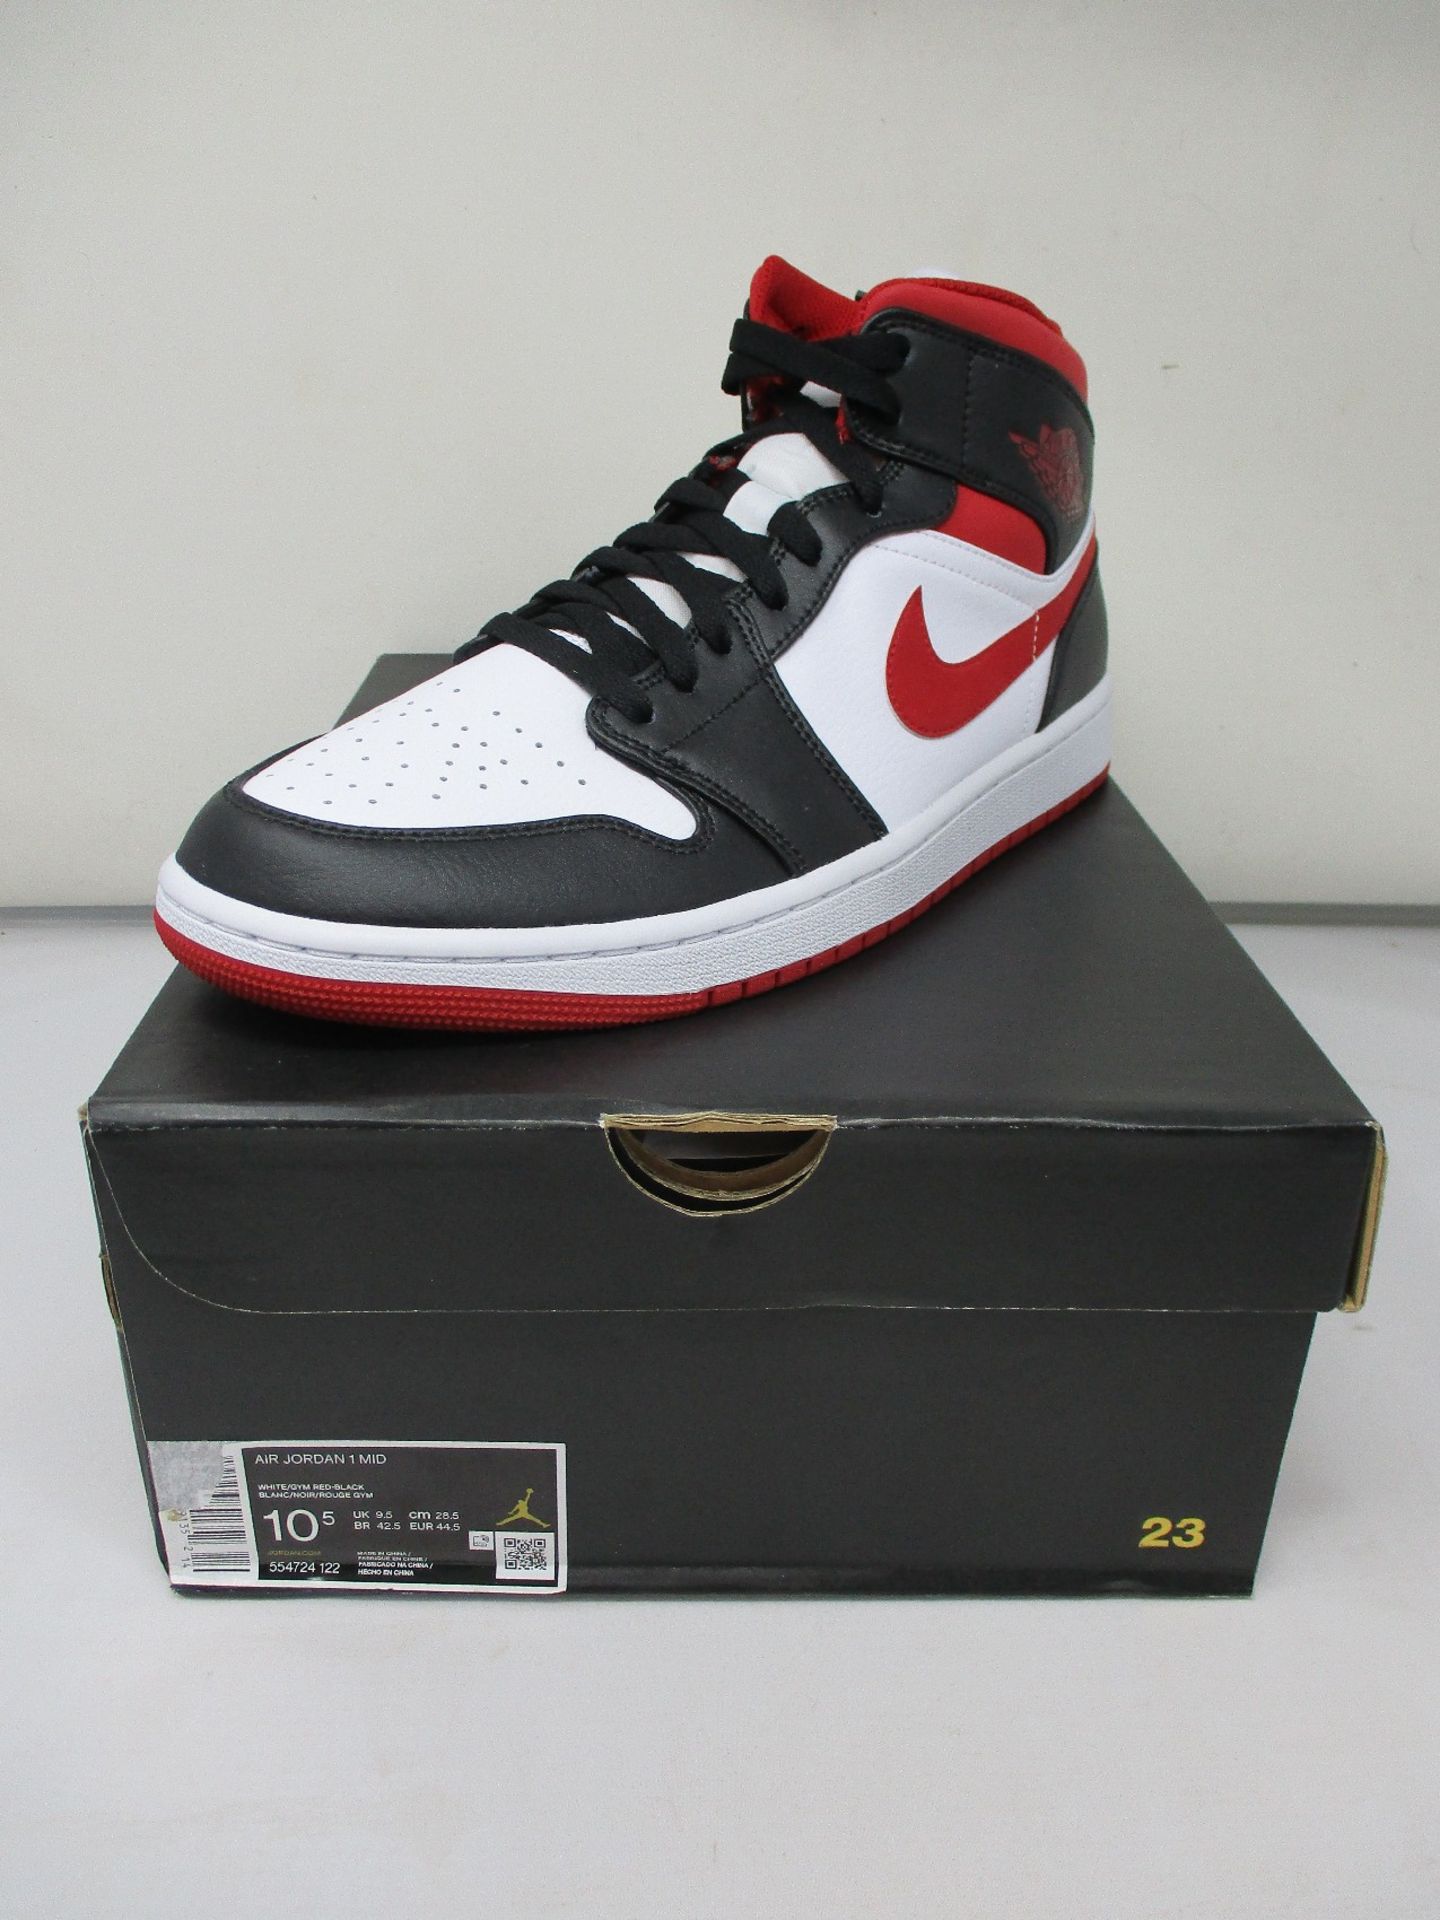 A pair of as new Nike Air Jordan 1 Mid (UK 9.5).